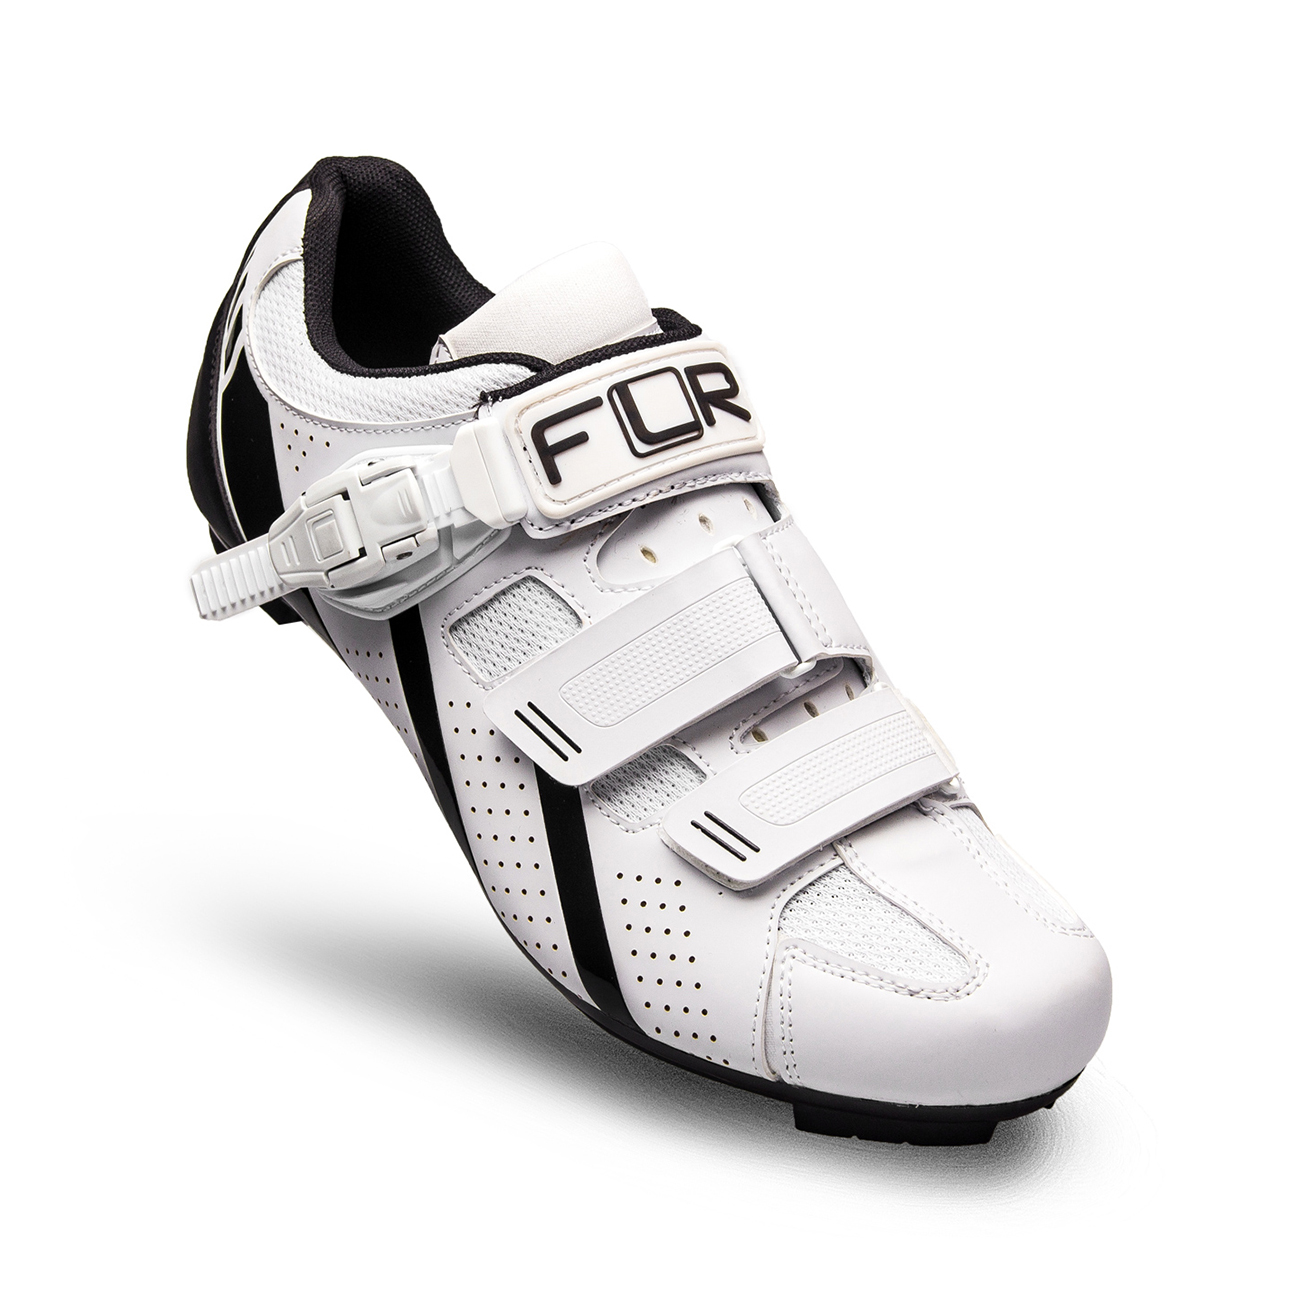 
                FLR Cyklistické tretry - F15 - čierna/biela 40
            